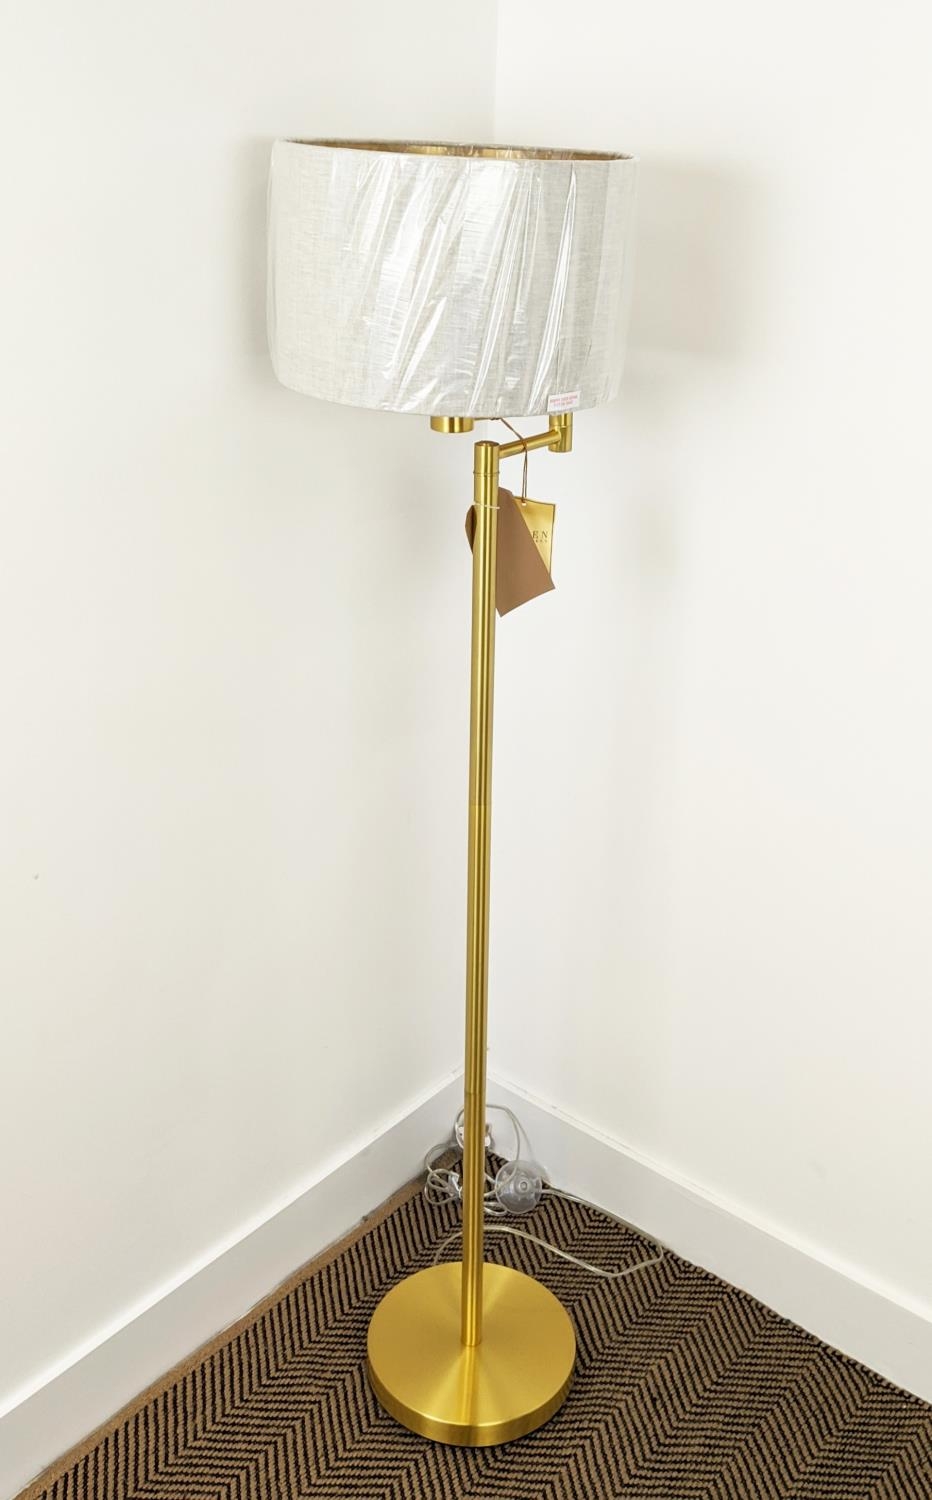 LAUREN RALPH LAUREN HOME FLOOR LAMP, gilt metal, with shade, 143cm H. - Image 2 of 5